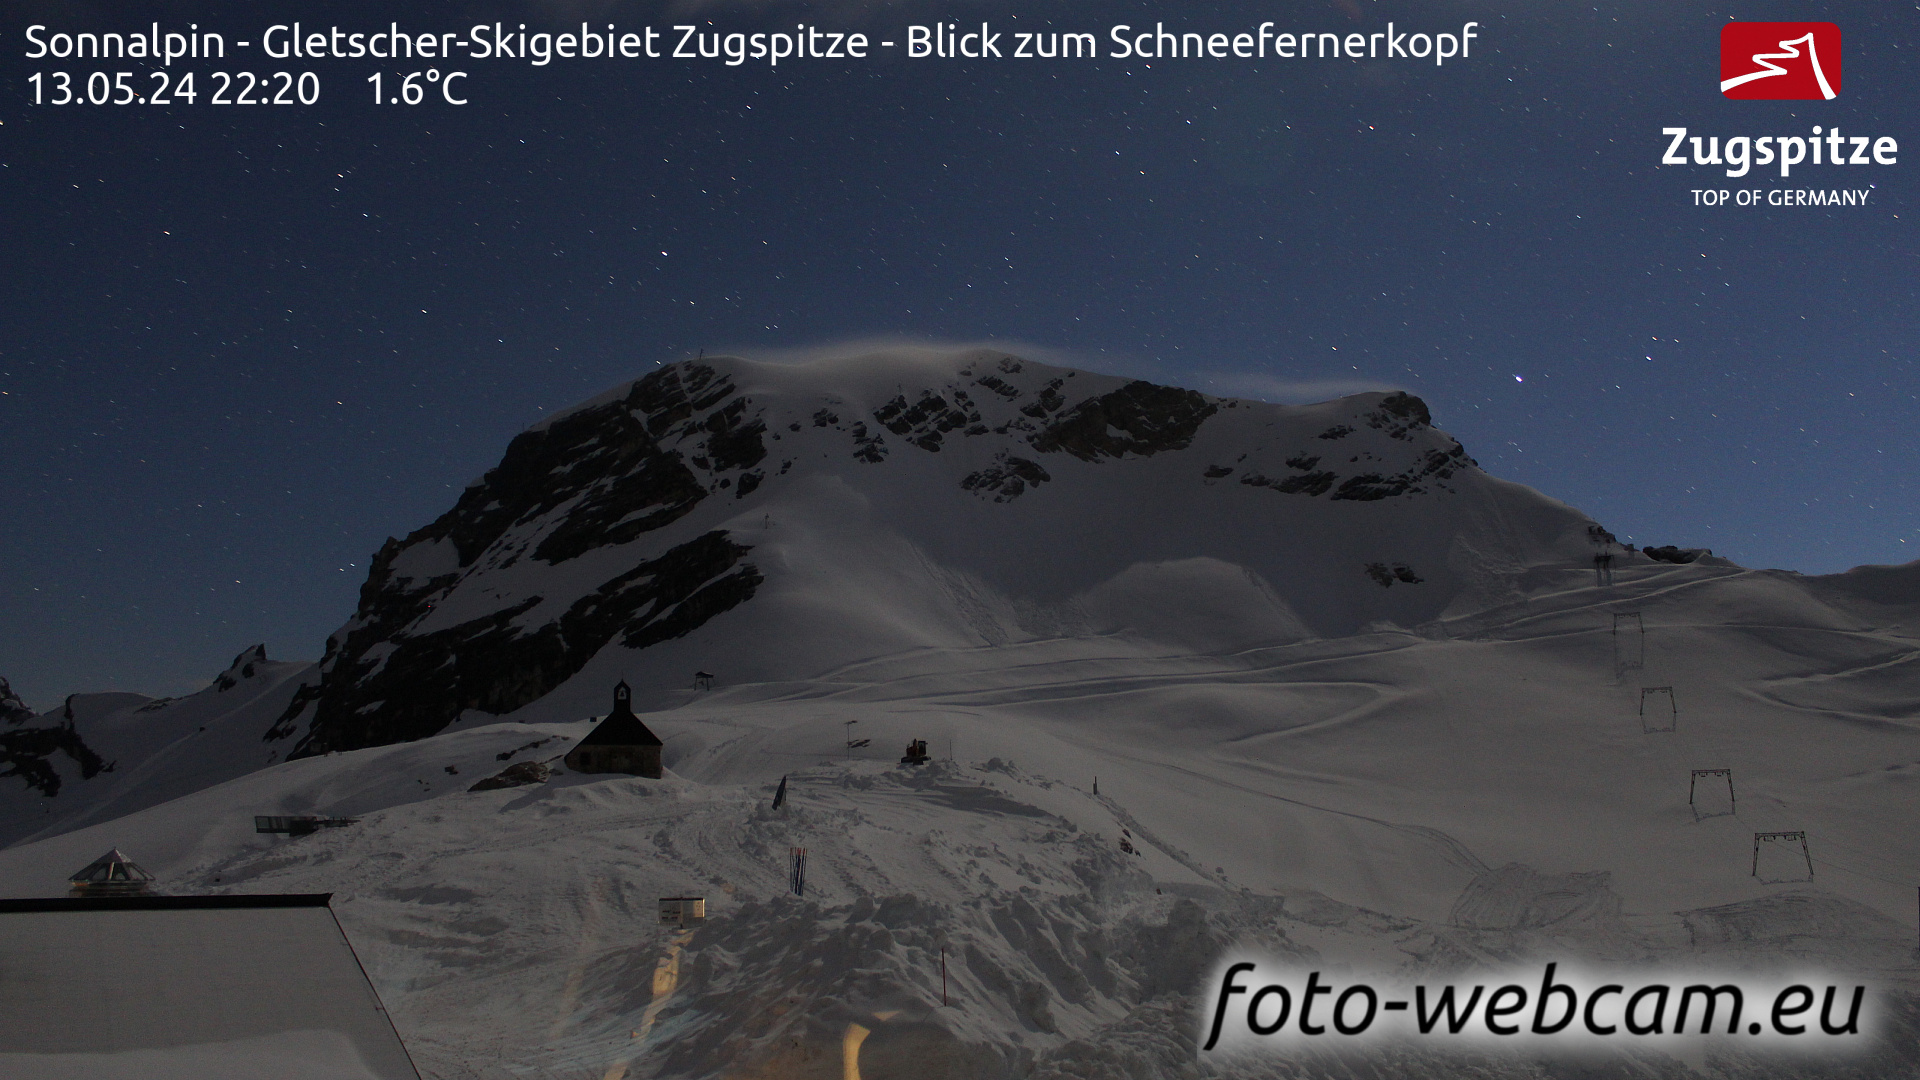 Zugspitze So. 22:24